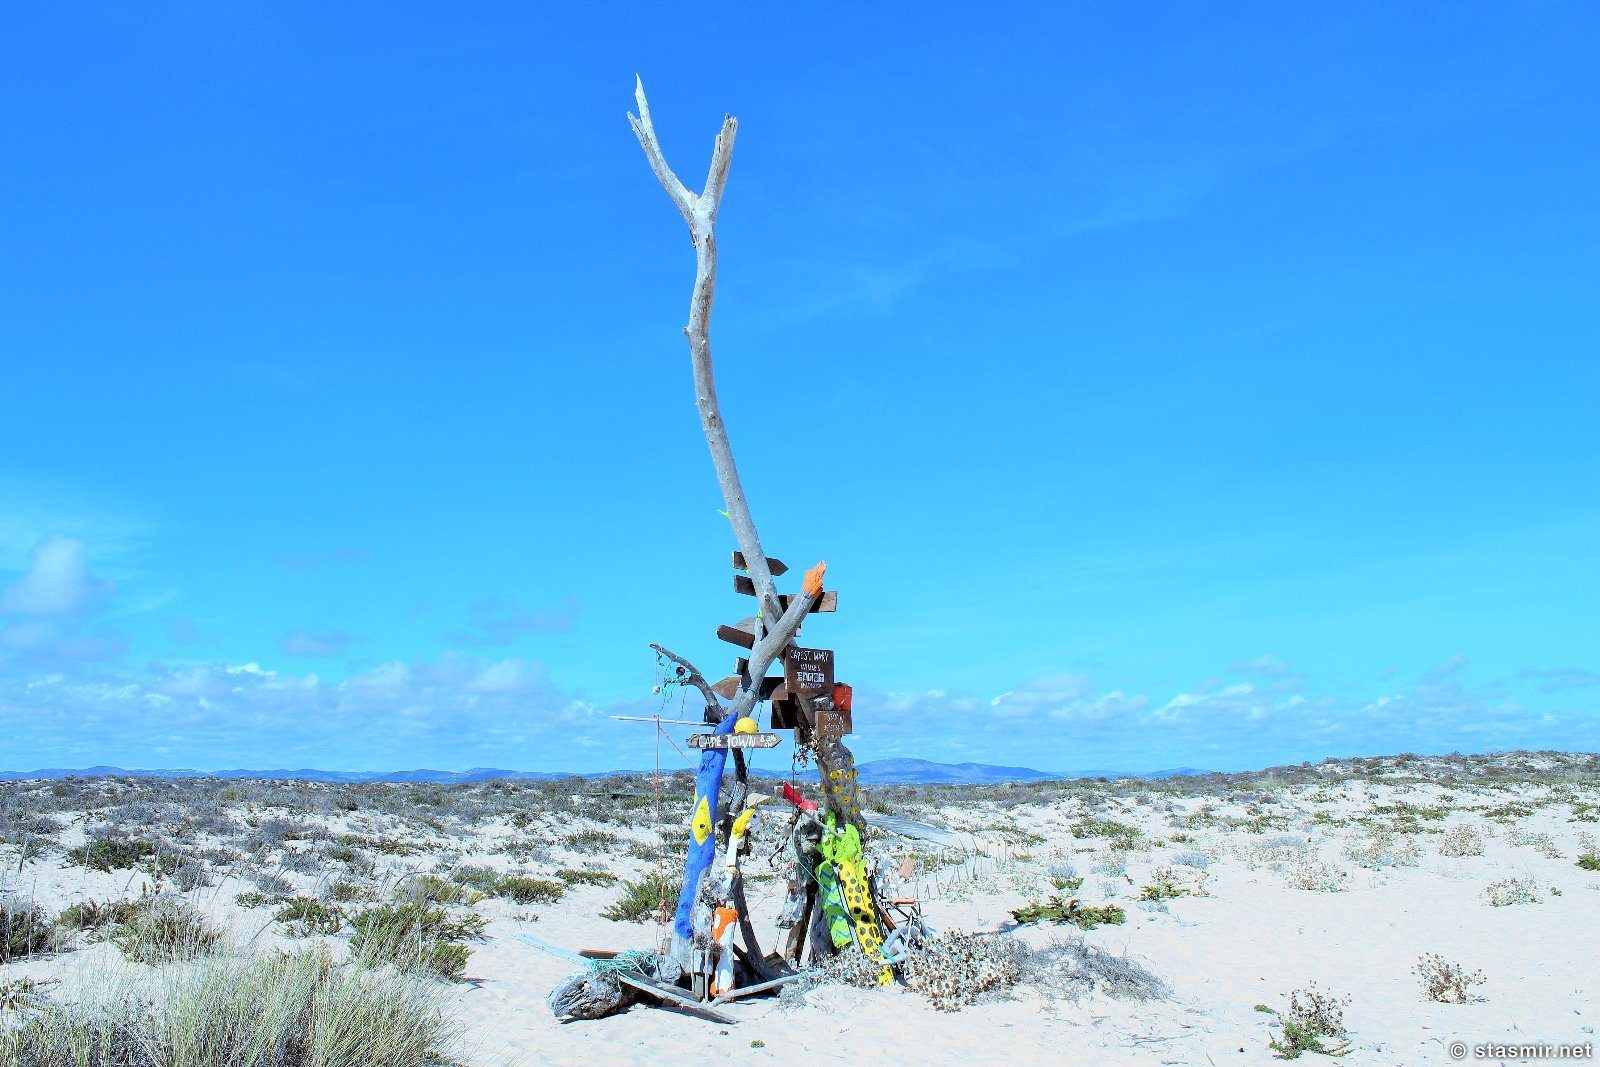 многокилометровые пляжи Ria Formosa или Риа-Формоза похожи только на Мозамбик, Ilha Deserta, Необиатемый остров в Алгарве, Algarve, пляж в Алгарве, фото Стасмир, Photo Stasmir